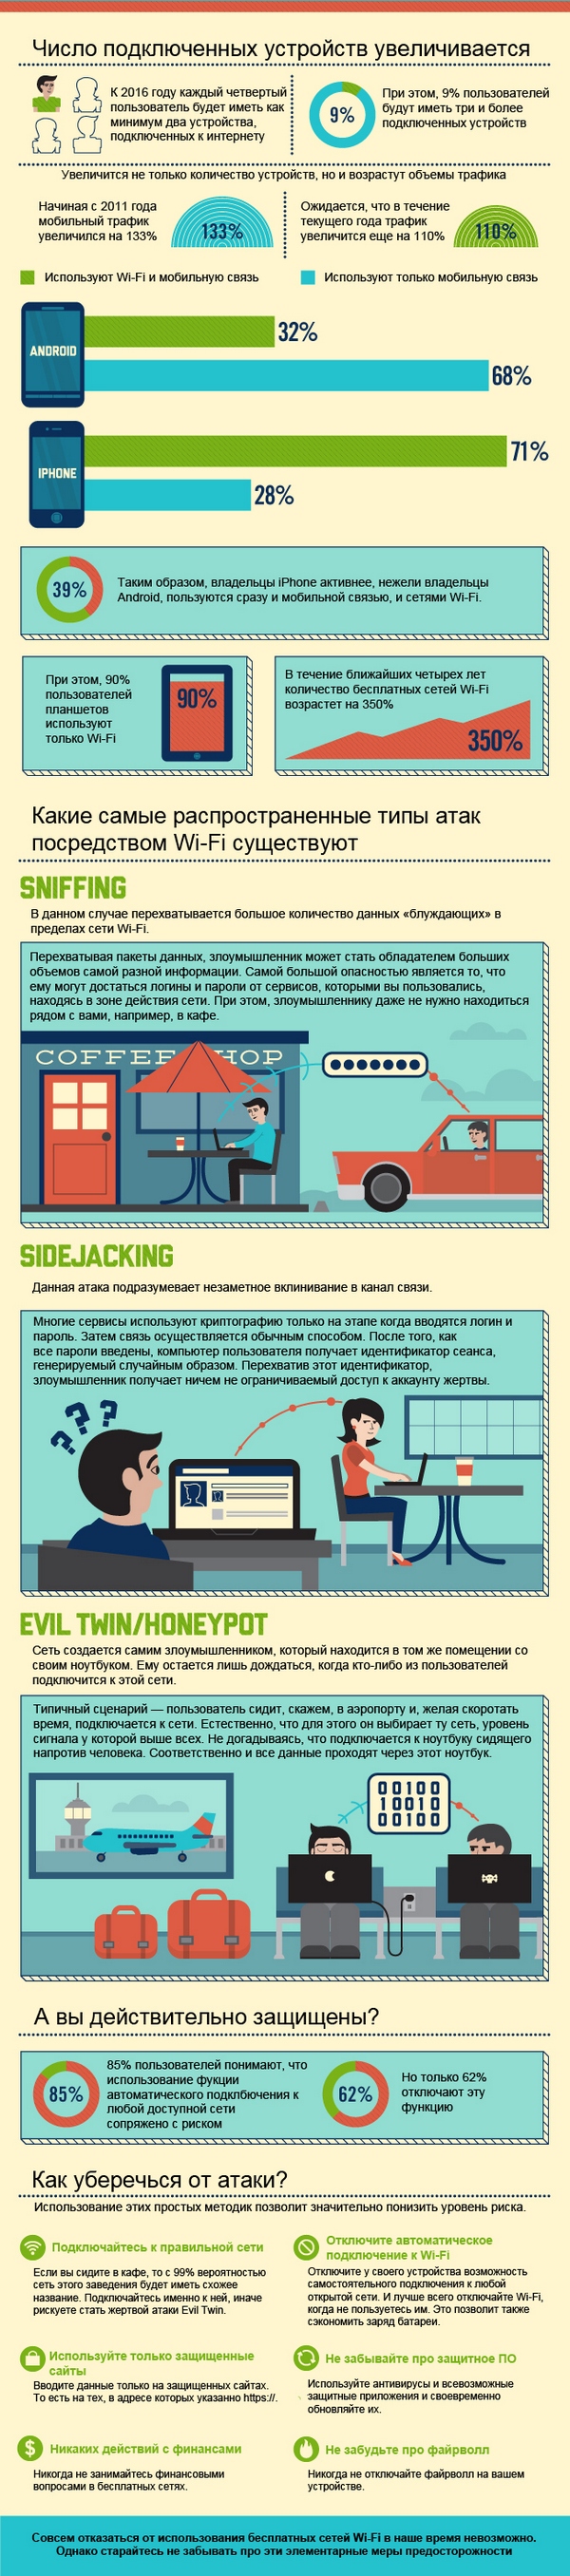 Инфографика: вред и польза от бесплатного Wi-Fi-2